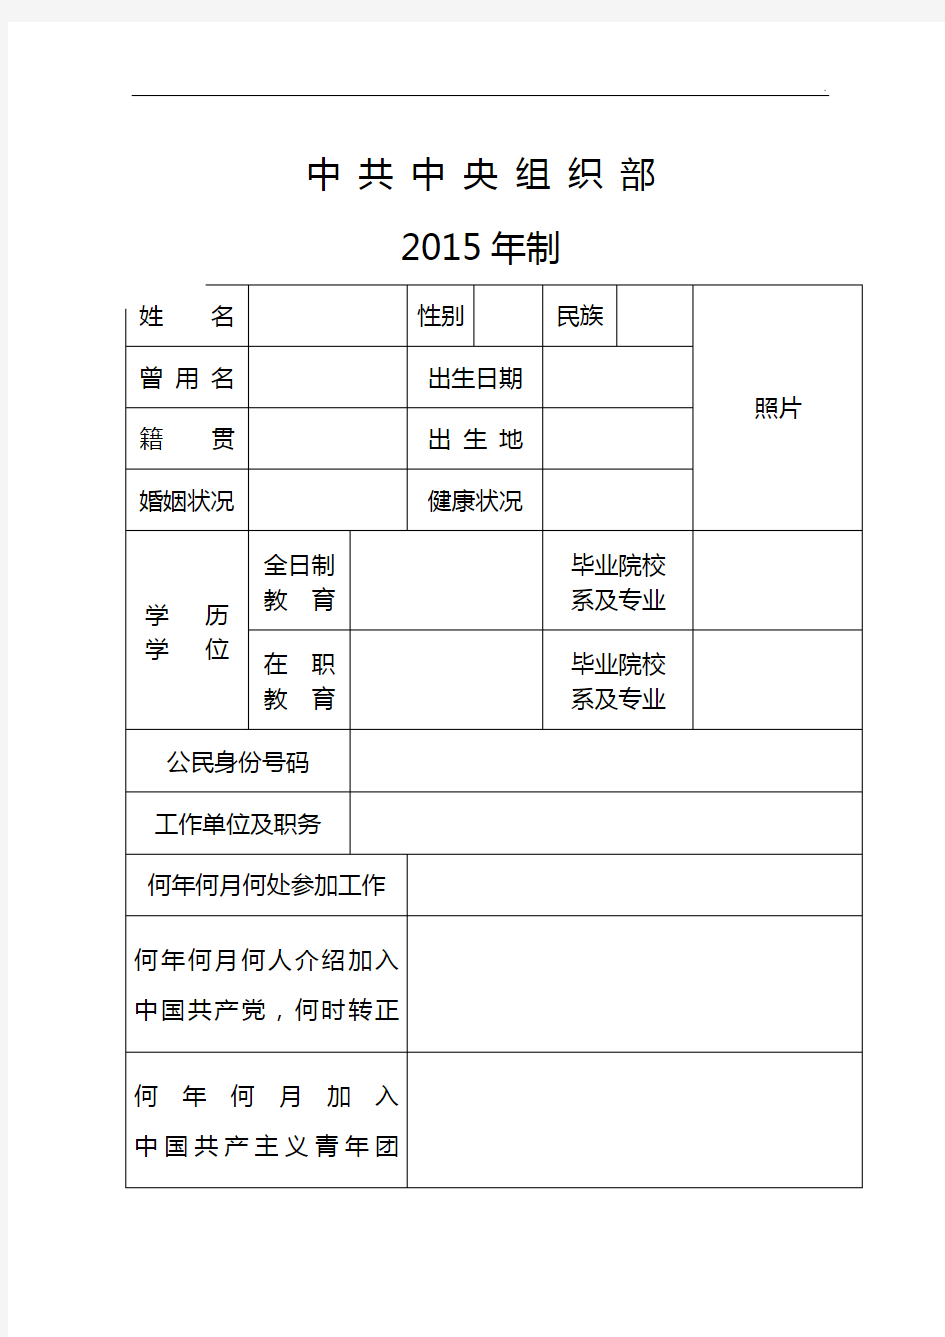 全部整合干部履历表(2015年度版)